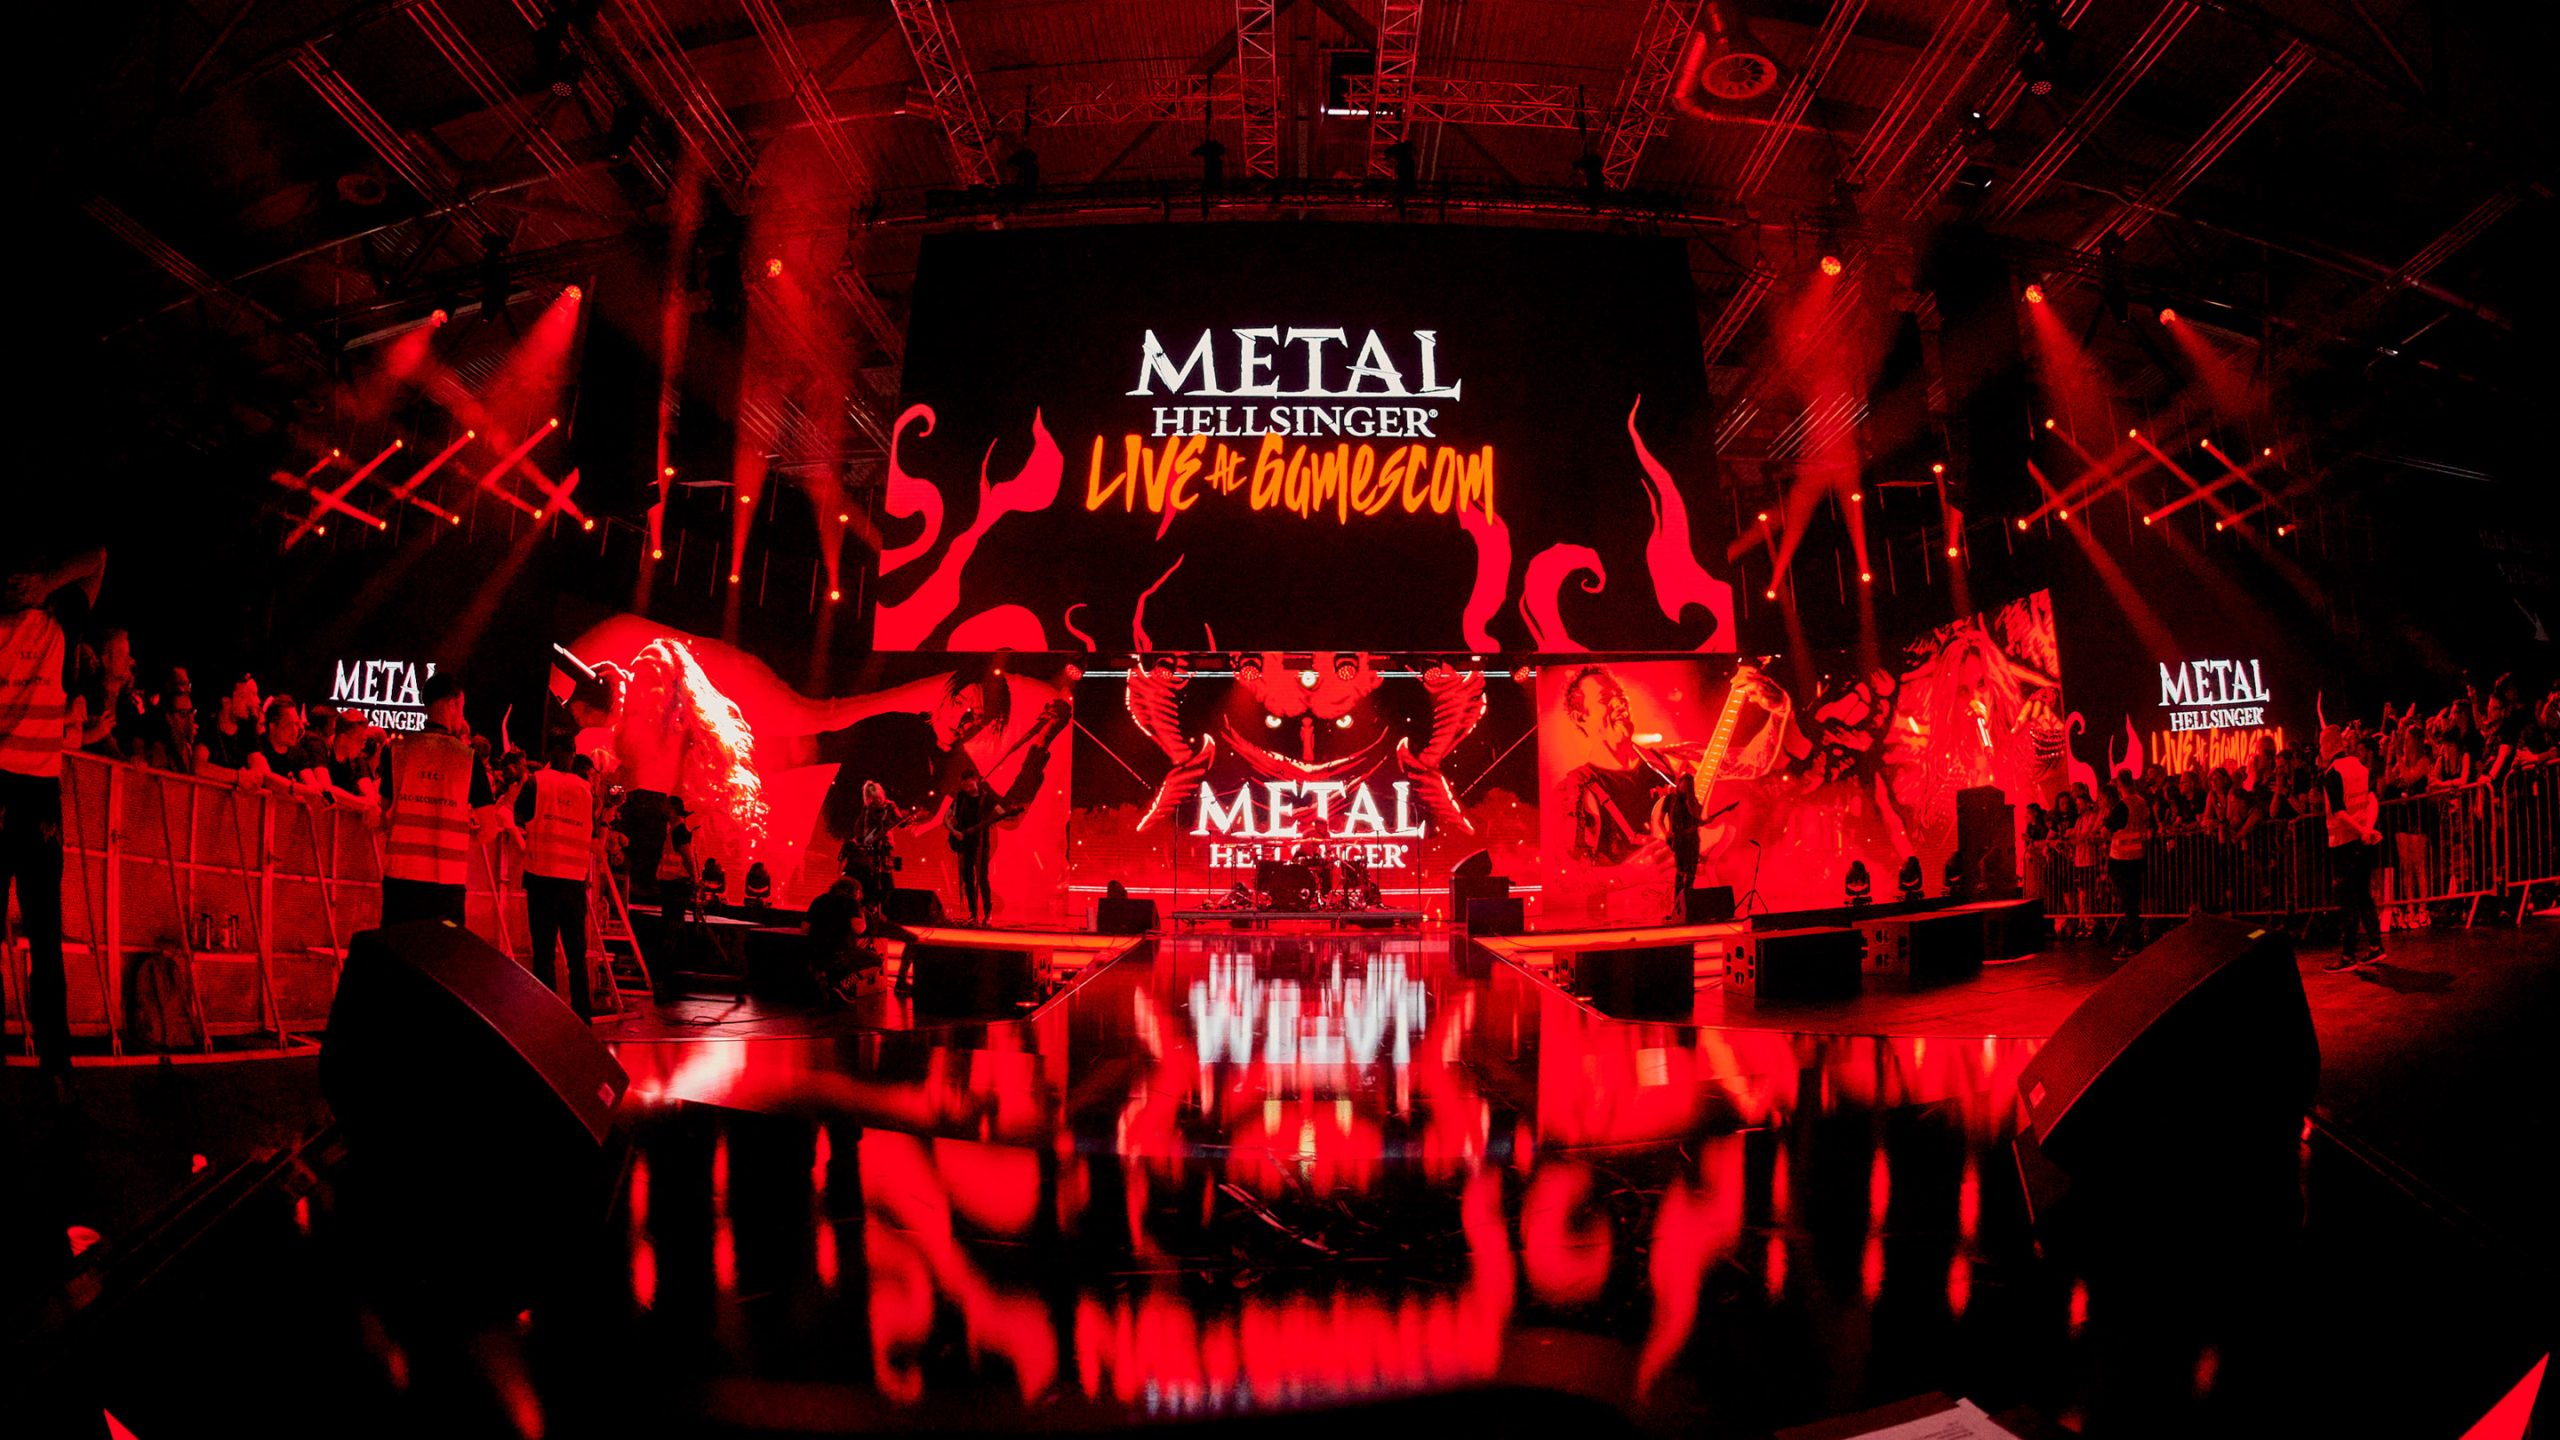 Metal: Hellsinger Konzert, Halle 6, gamescom 2022